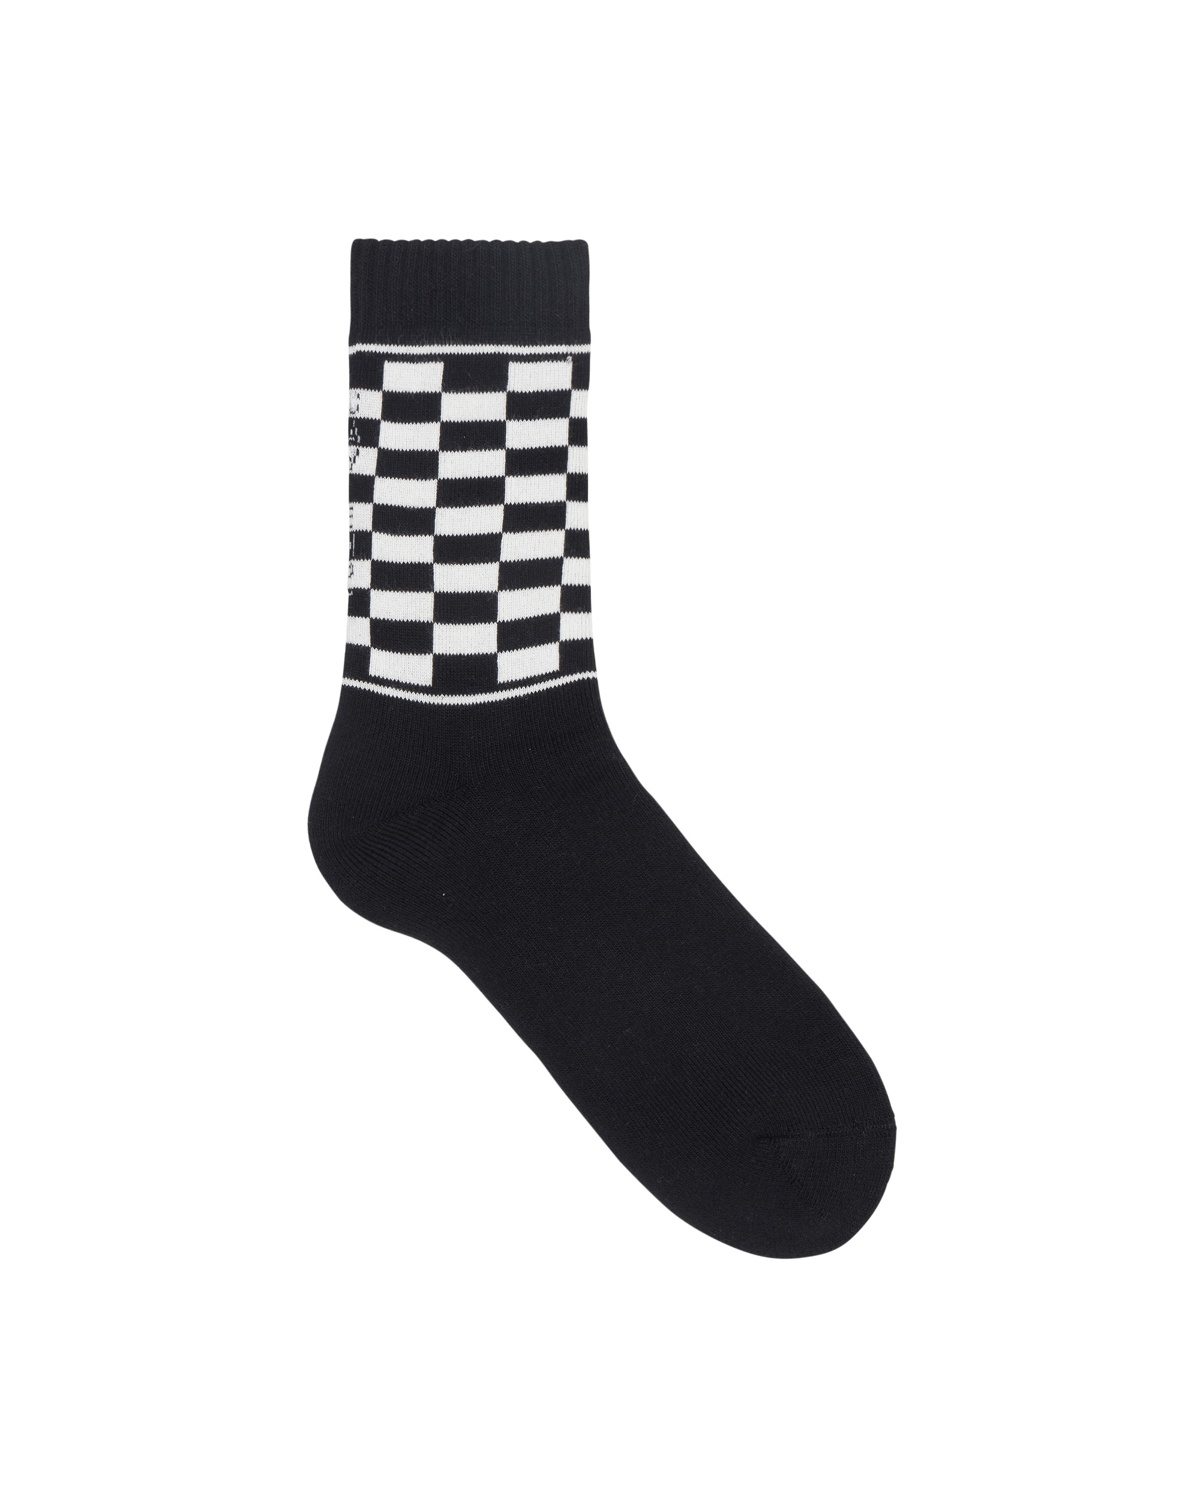 Checker Socks Cav Empt